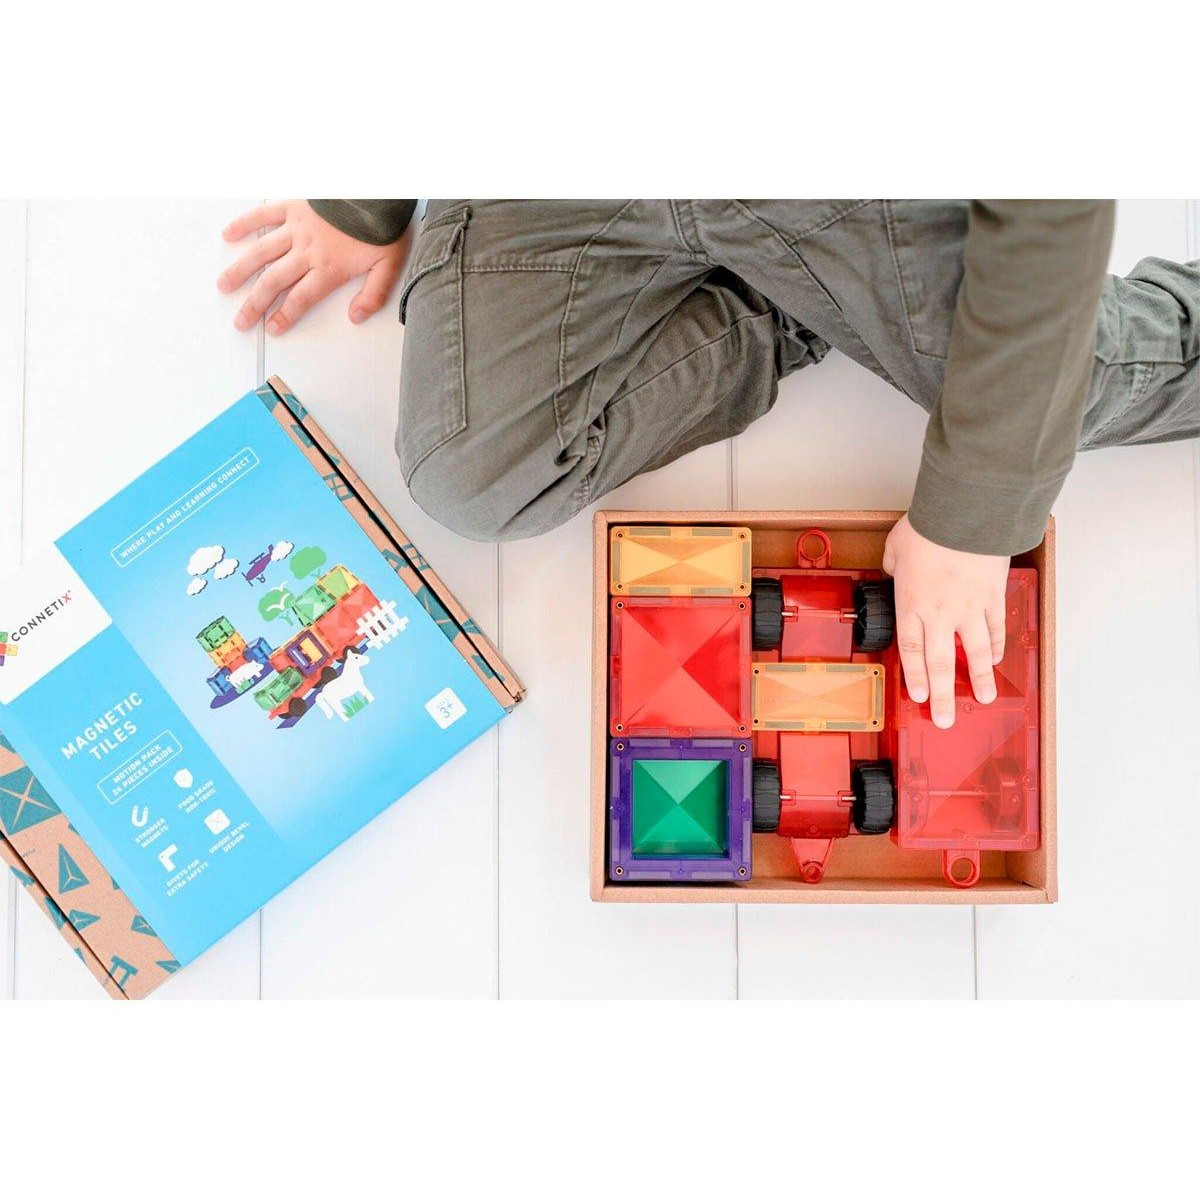 Mix de Cubos juego de composición de madera 3D Haba - envío 24/48h -   tienda de juguetes creativos